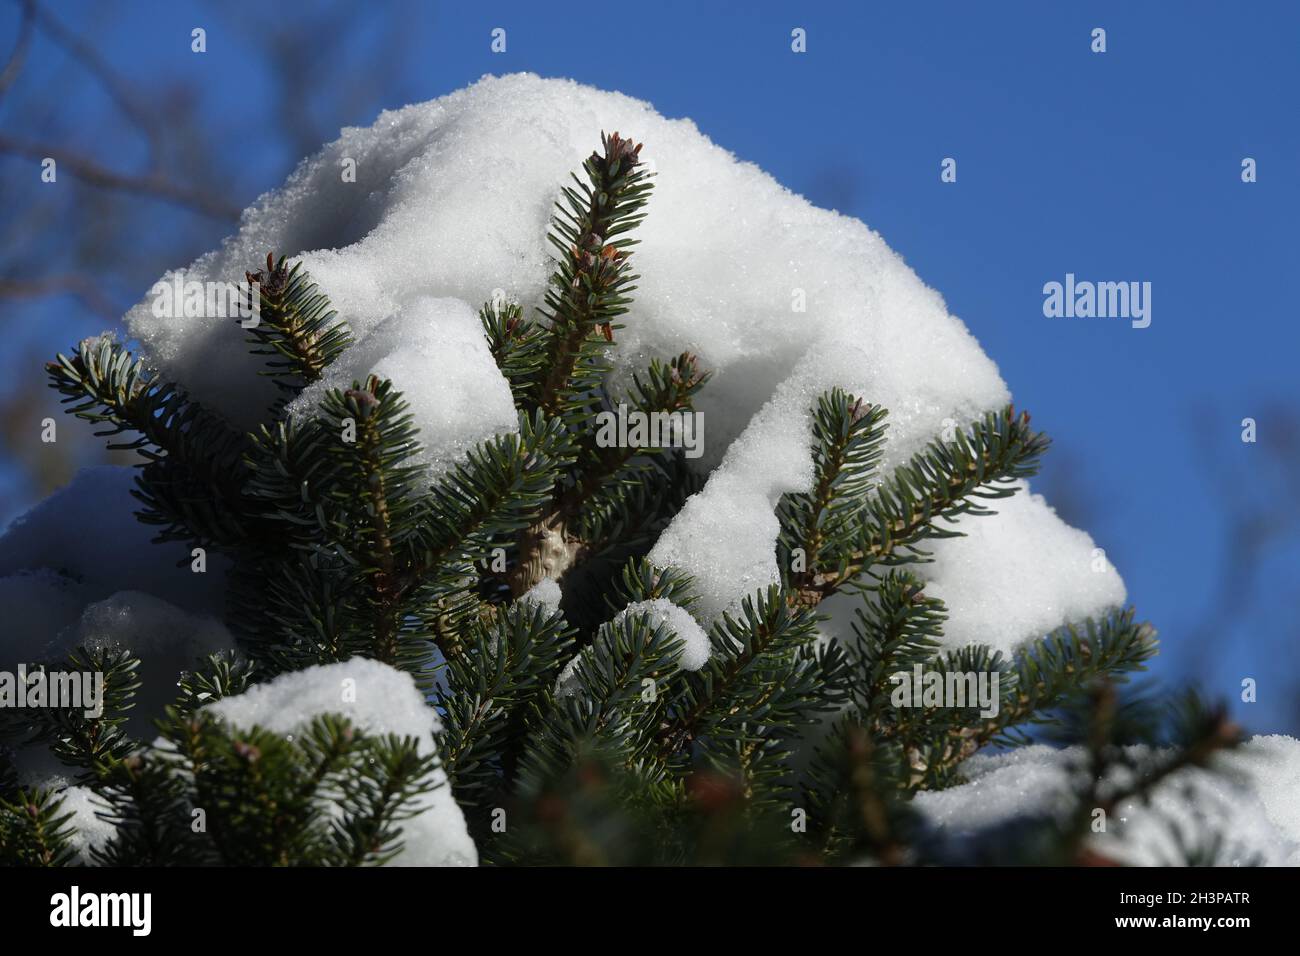 Abies nordmanniana, Caucasian fir, in winter Stock Photo